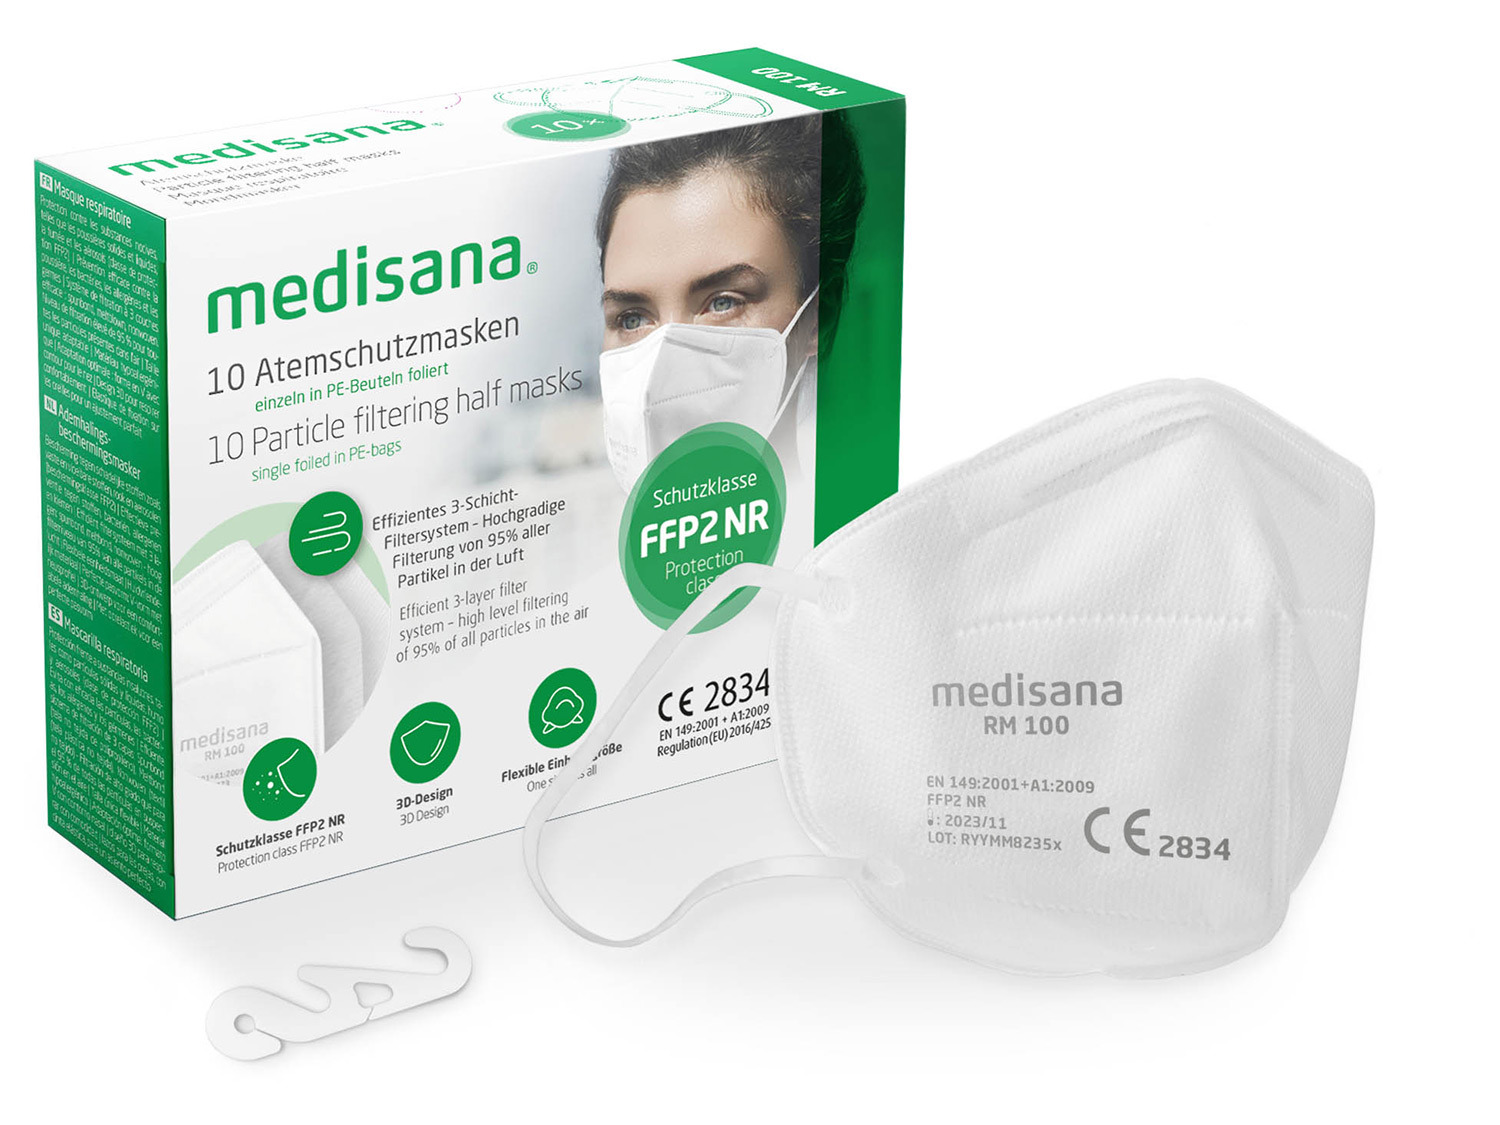 Atemschutzmasken | MEDISANA 100 RM FFP2 10pcs/set LIDL